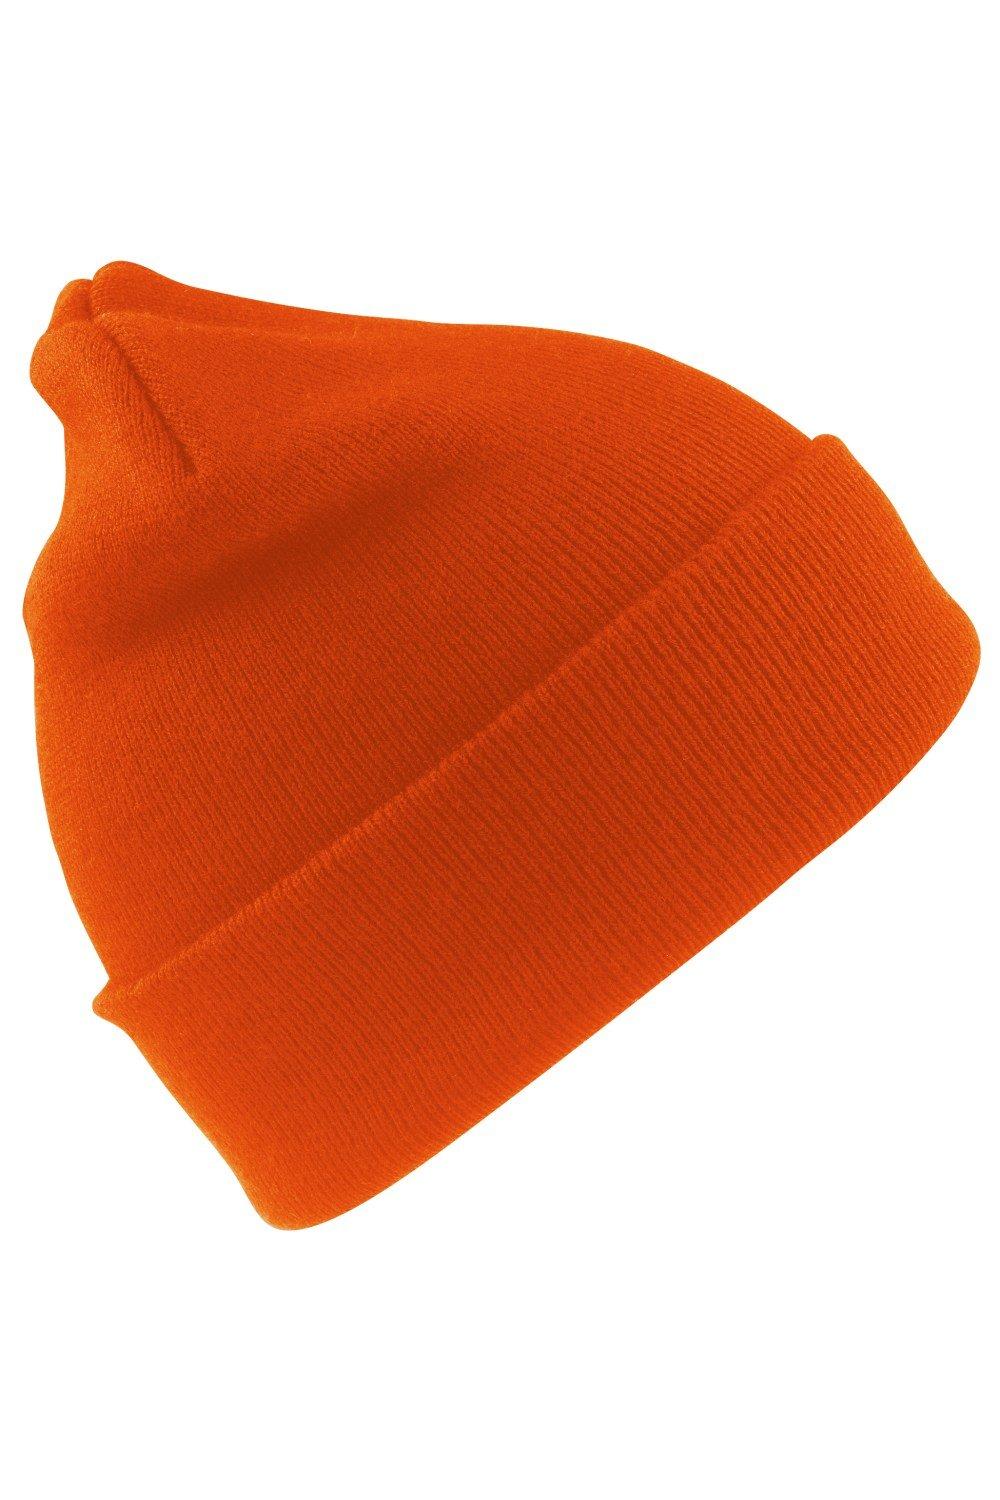 Шерстяная термолыжная/зимняя шапка с утеплителем Thinsulate 3M Result, оранжевый пряжа семеновская пряжа lina 59 темно синий 5 шт по 100 г